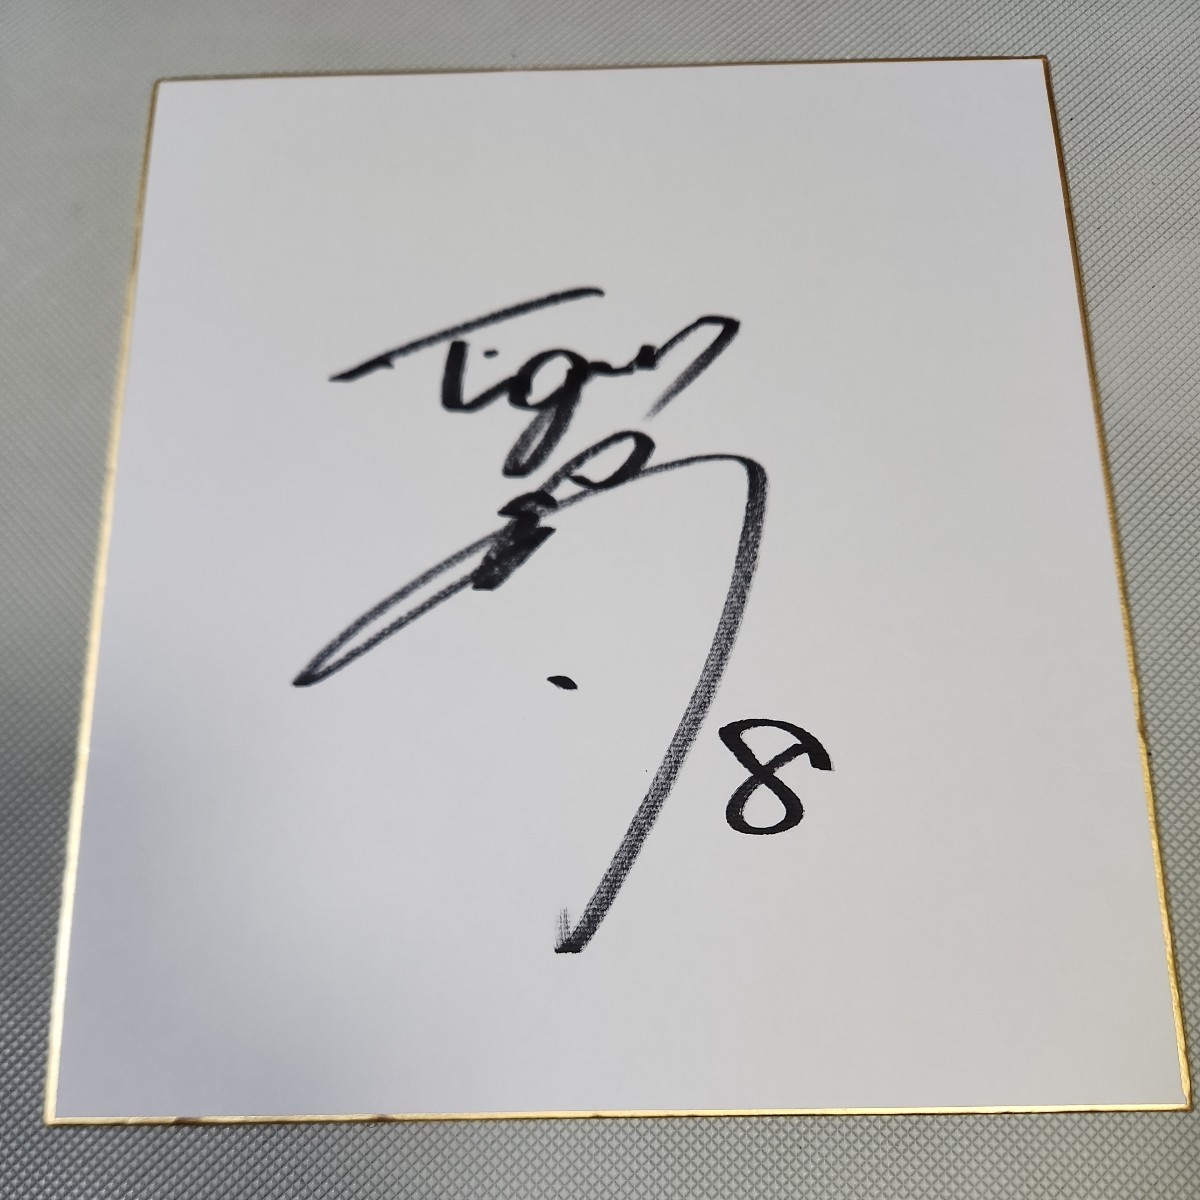 阪神タイガース 佐藤輝明選手直筆サイン色紙 の入札履歴 - 入札者の順位